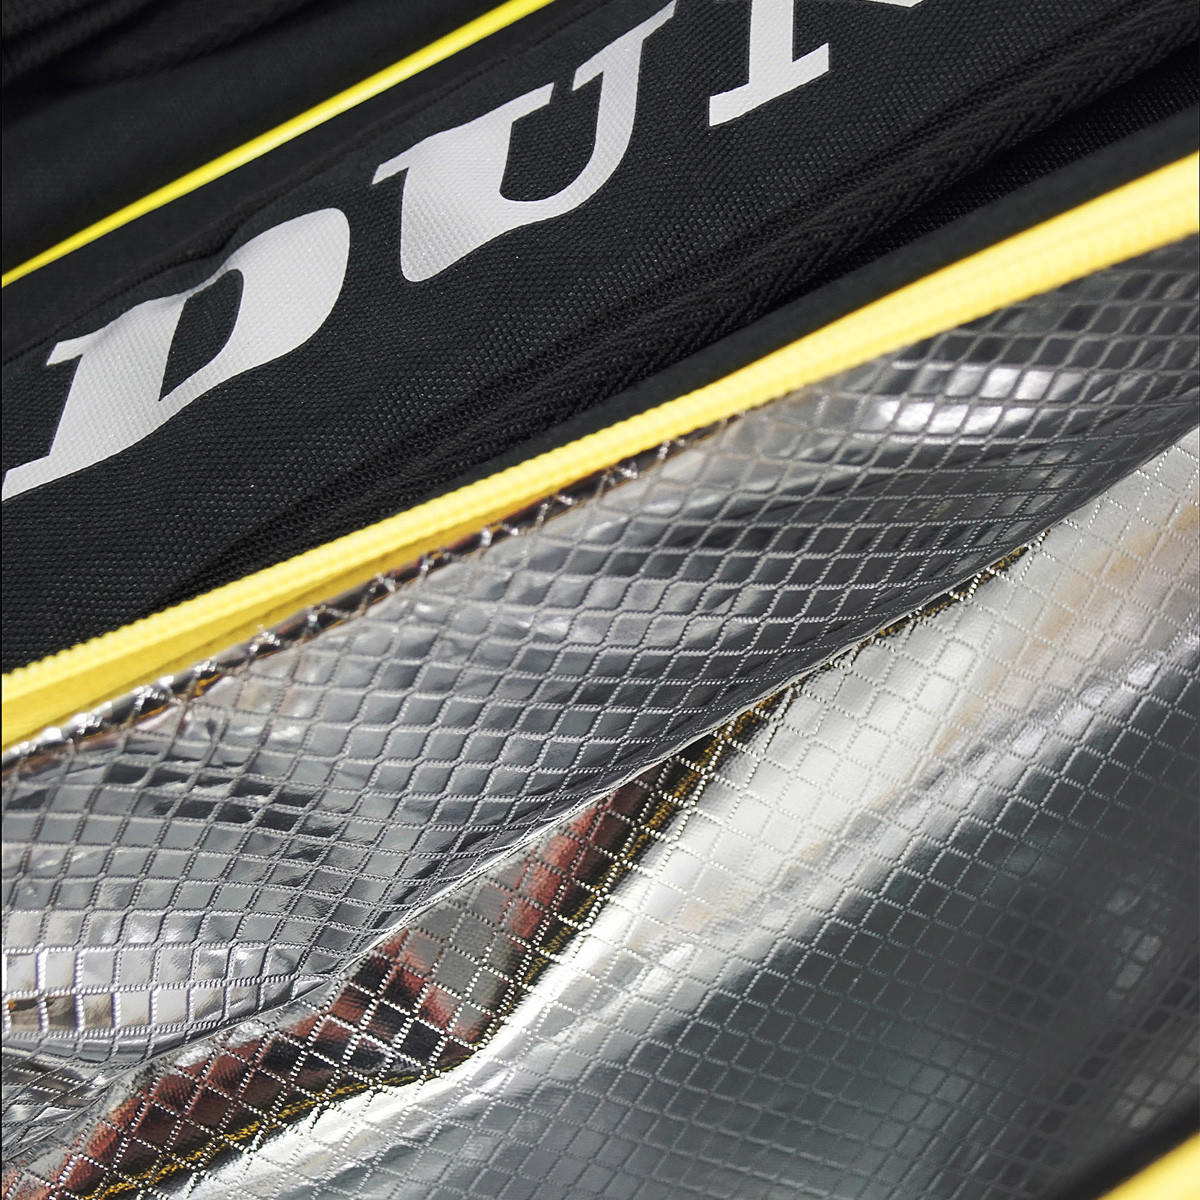 Dunlop Padel Bag Elite Paletero